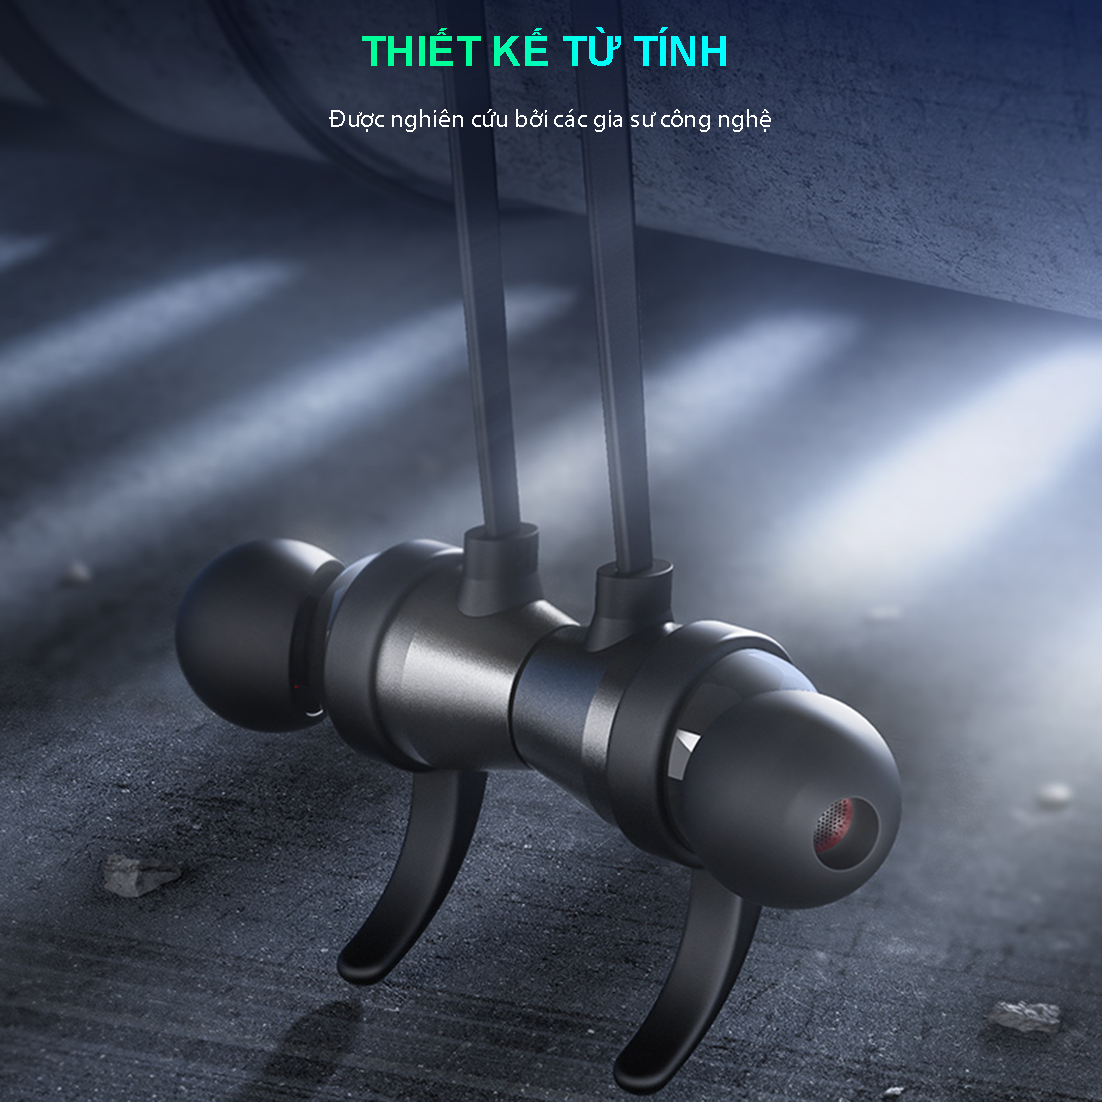 Tai nghe thể thao đeo cổ bluetooth không dây SIDOTECH N1 pin 5h âm thanh vòm thiết kế chống nước chuyên dụng chơi thể thao chạy bộ và gaming - Hàng Chính Hãng